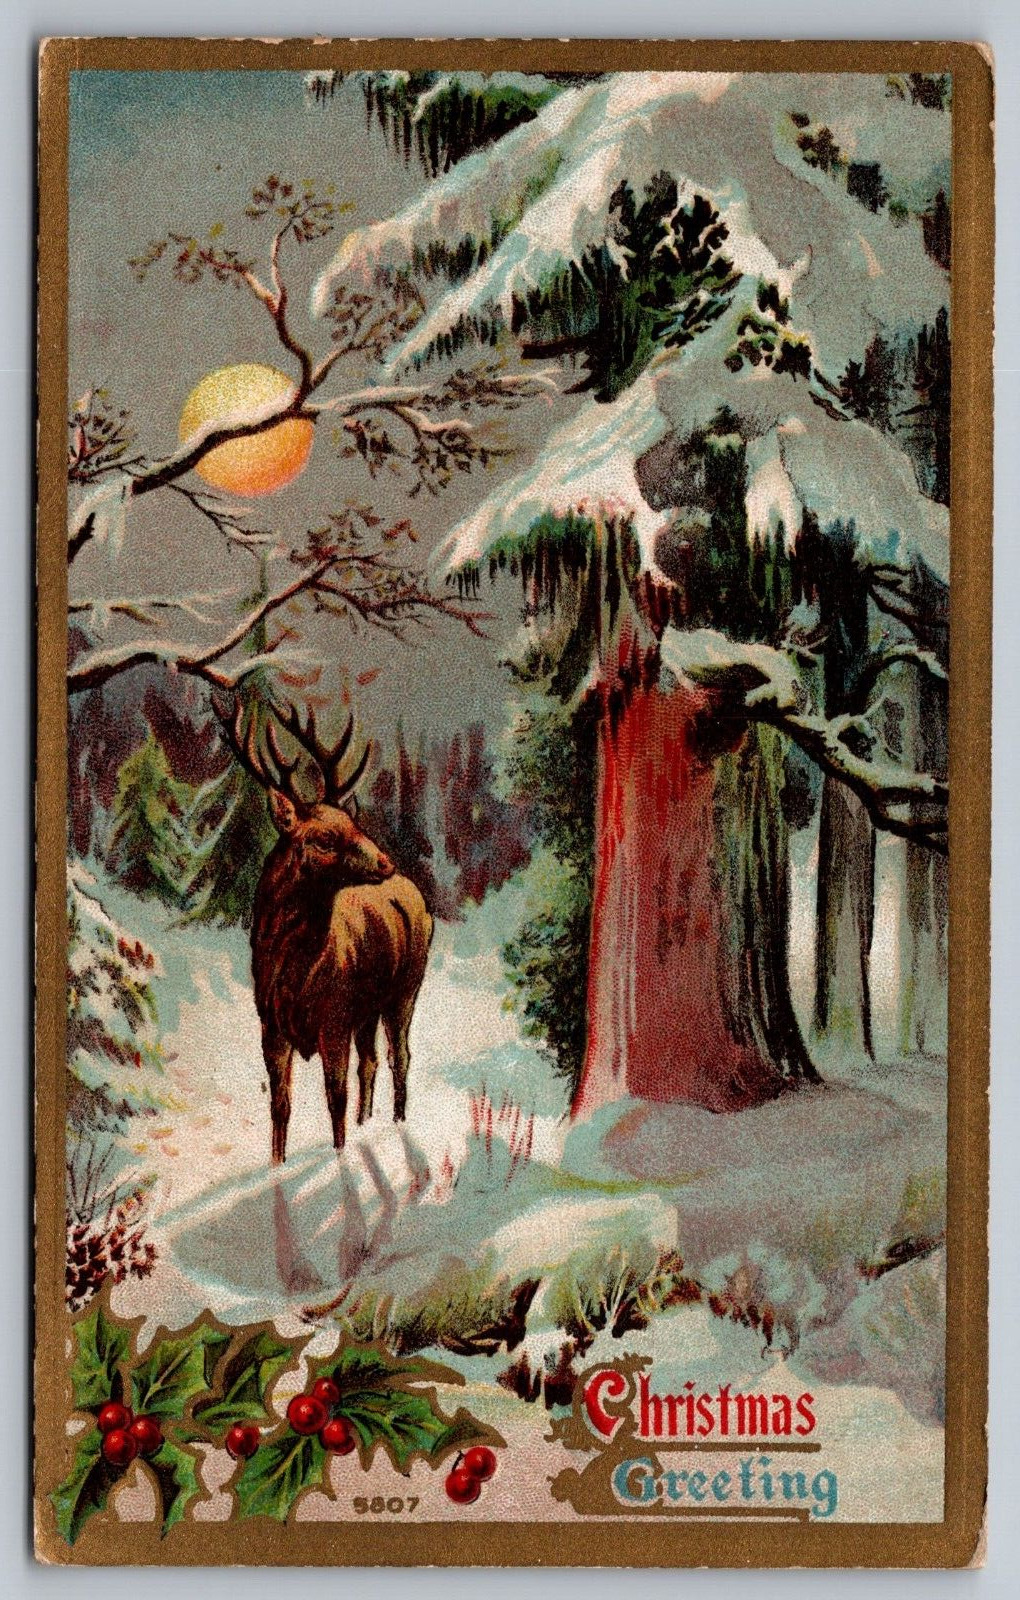 Christmas Greetings w/ Deer in the Moonlit Woods-c1910 Antique Postcard